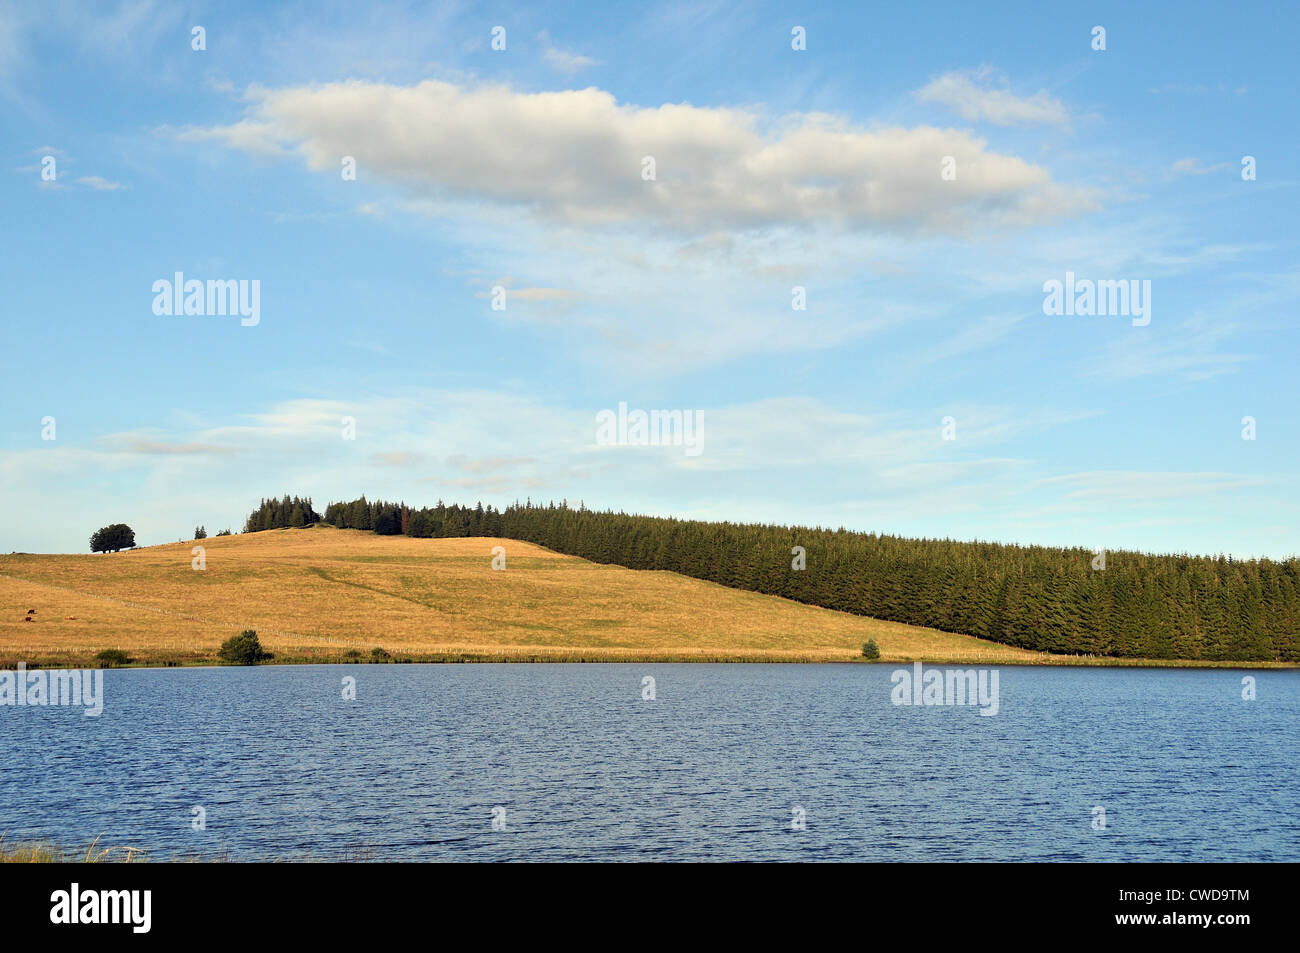 Bourdouze lake, Cezallier, Puy de Dome, Auvergne, Massif Central, France Stock Photo